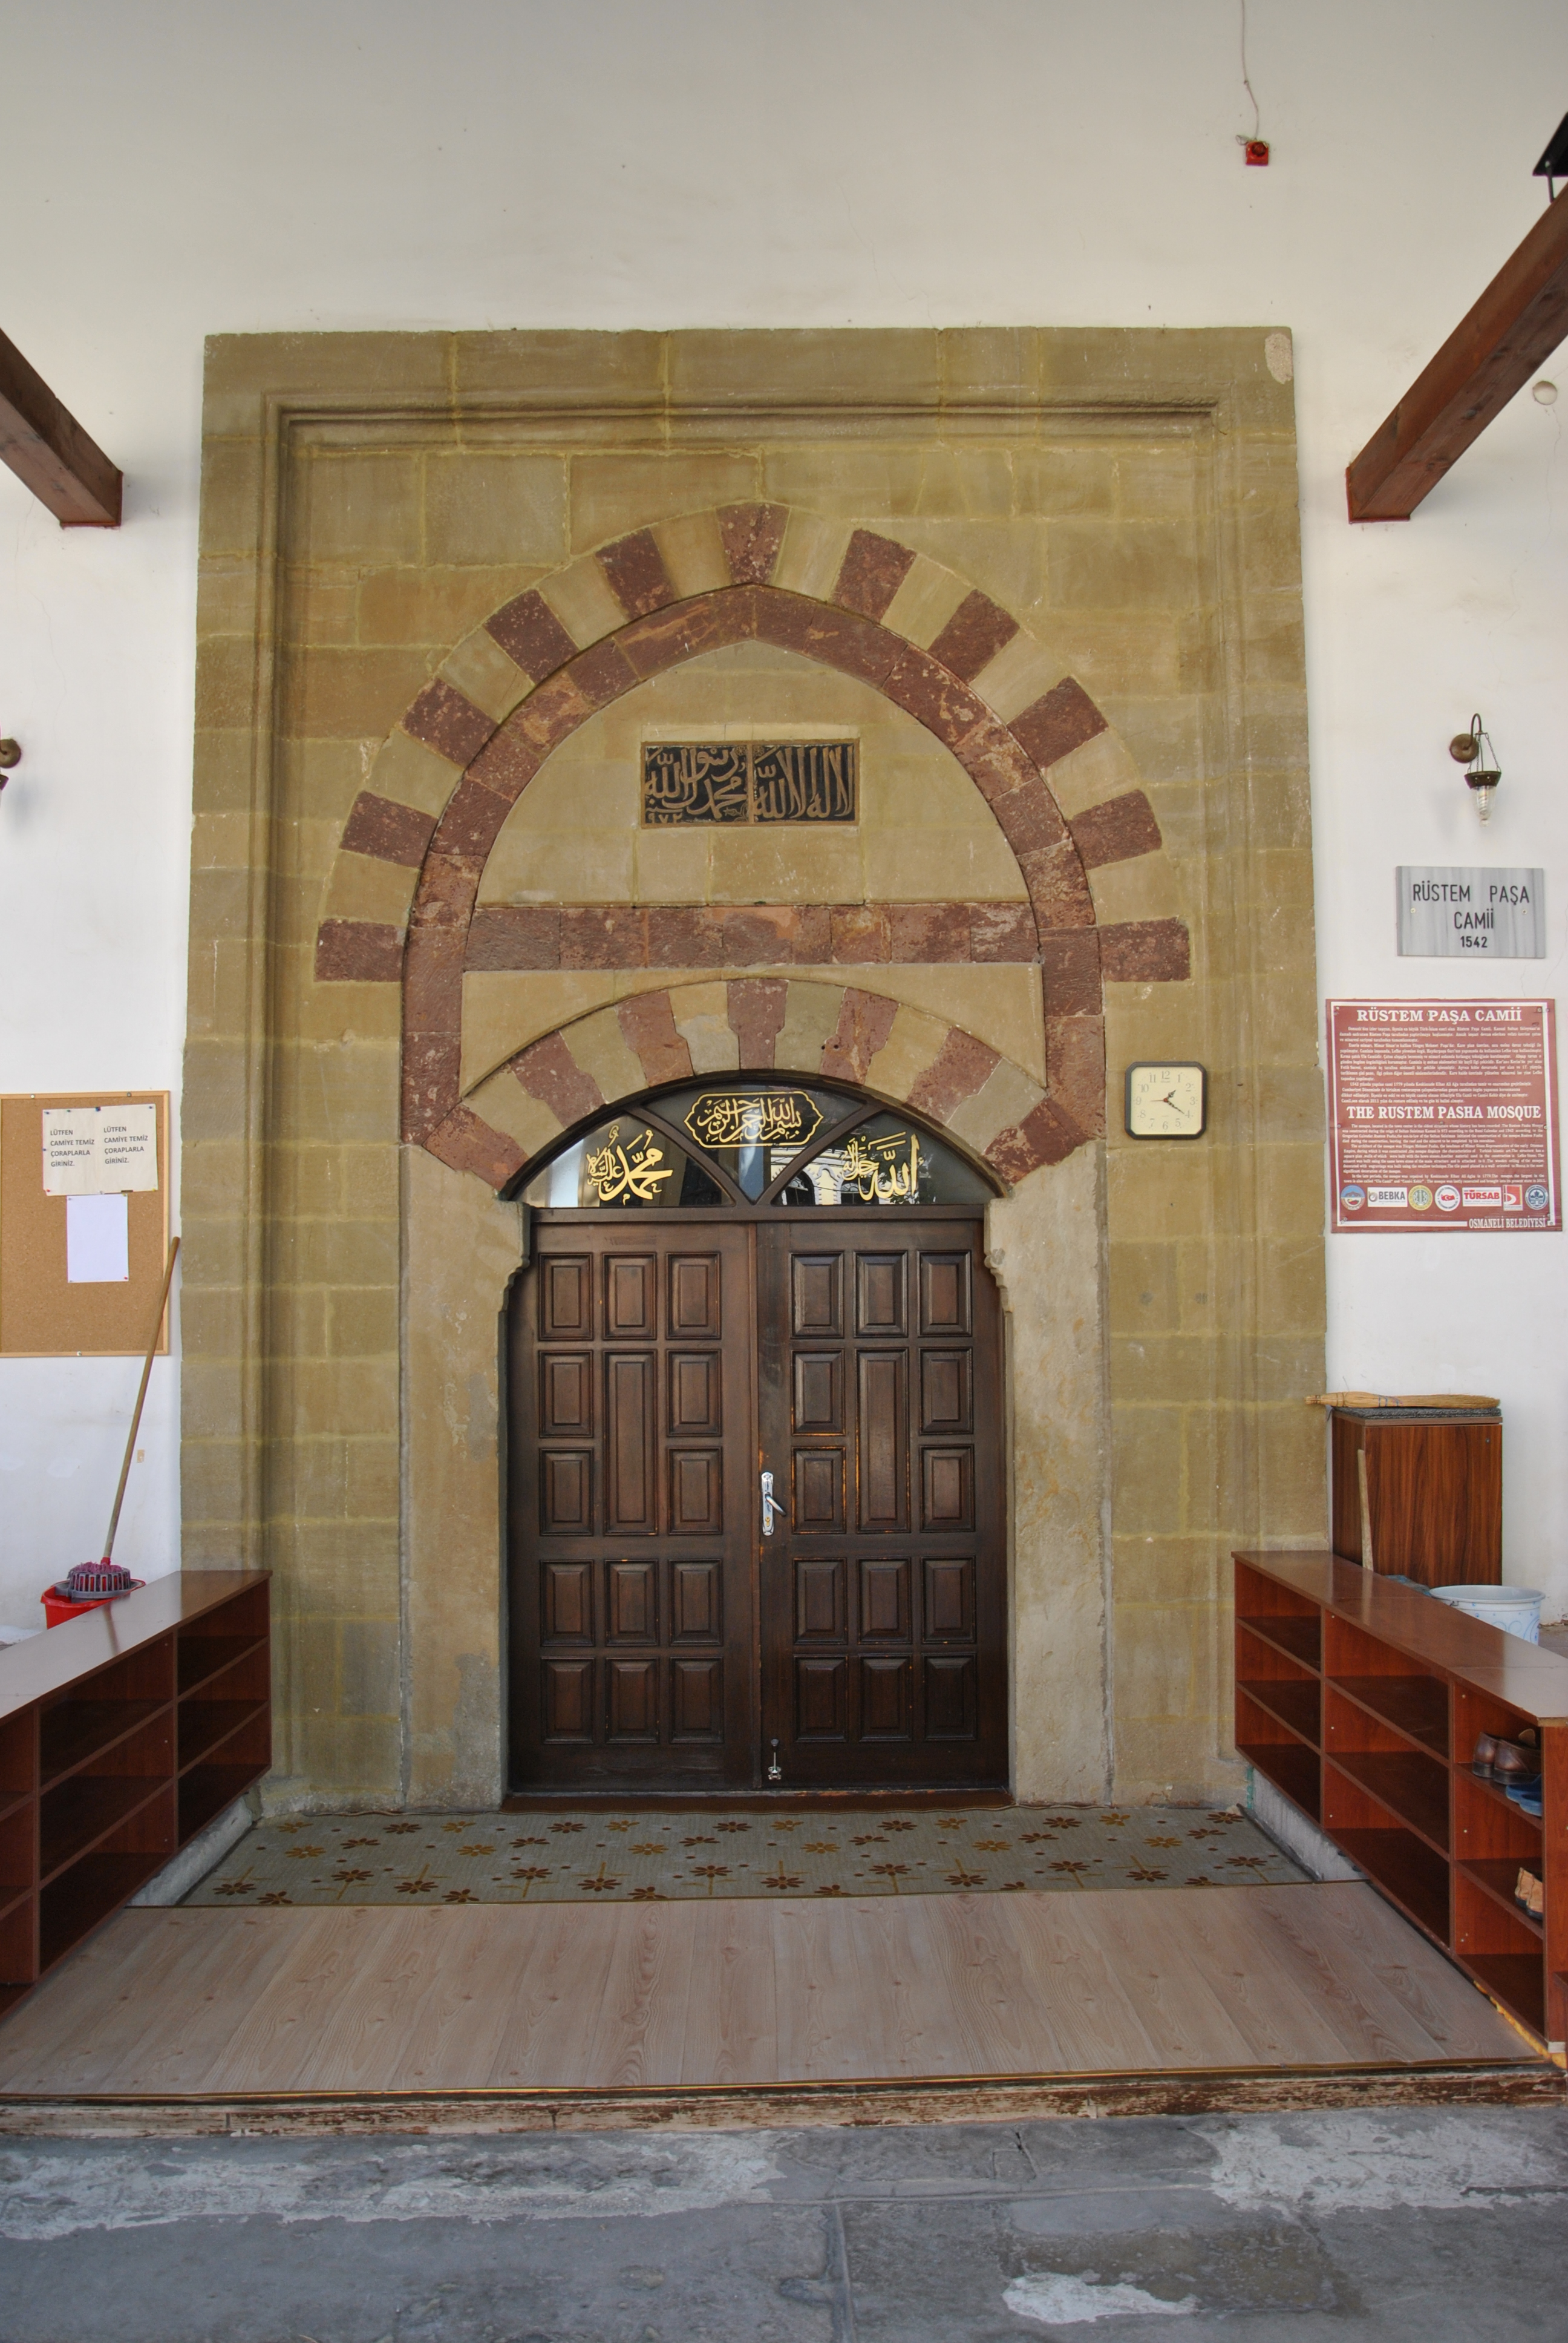 Fotoğraf 13. Rüstem Paşa Camii’nin giriş kapısı.